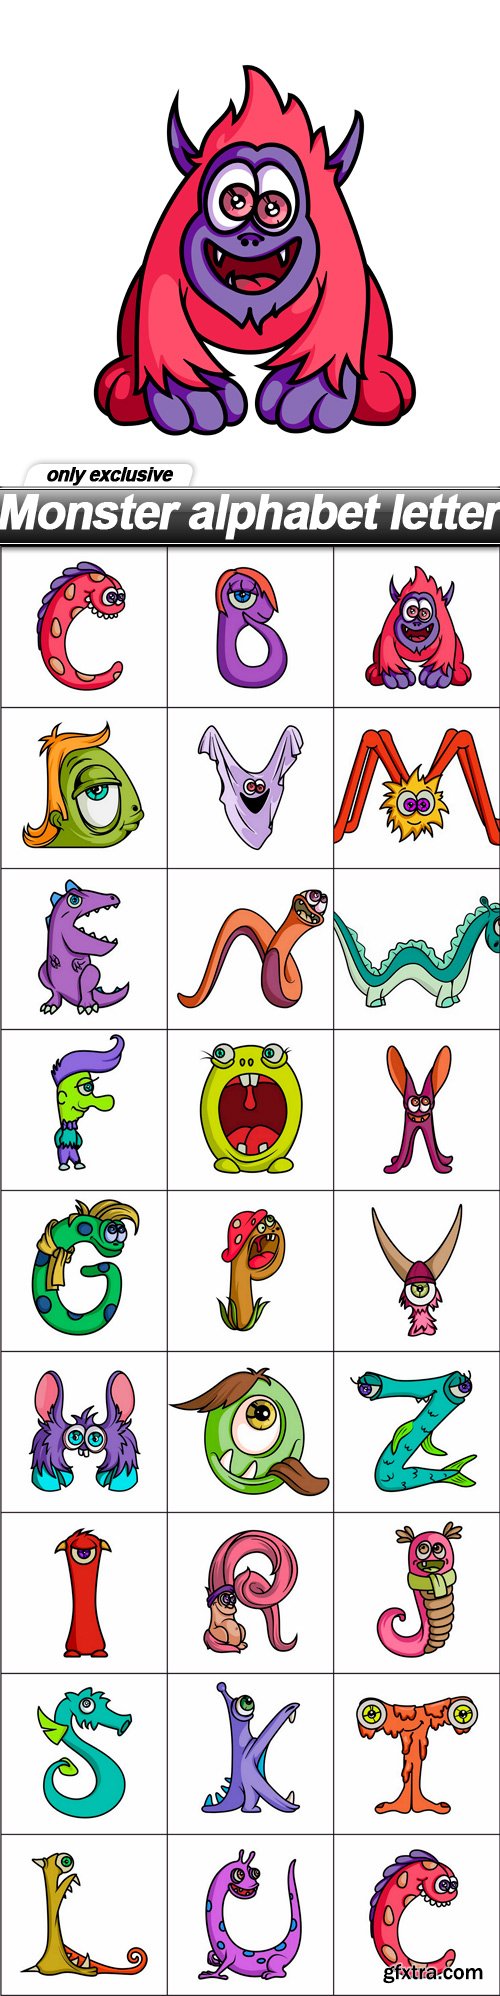 Monster alphabet letter - 26 EPS